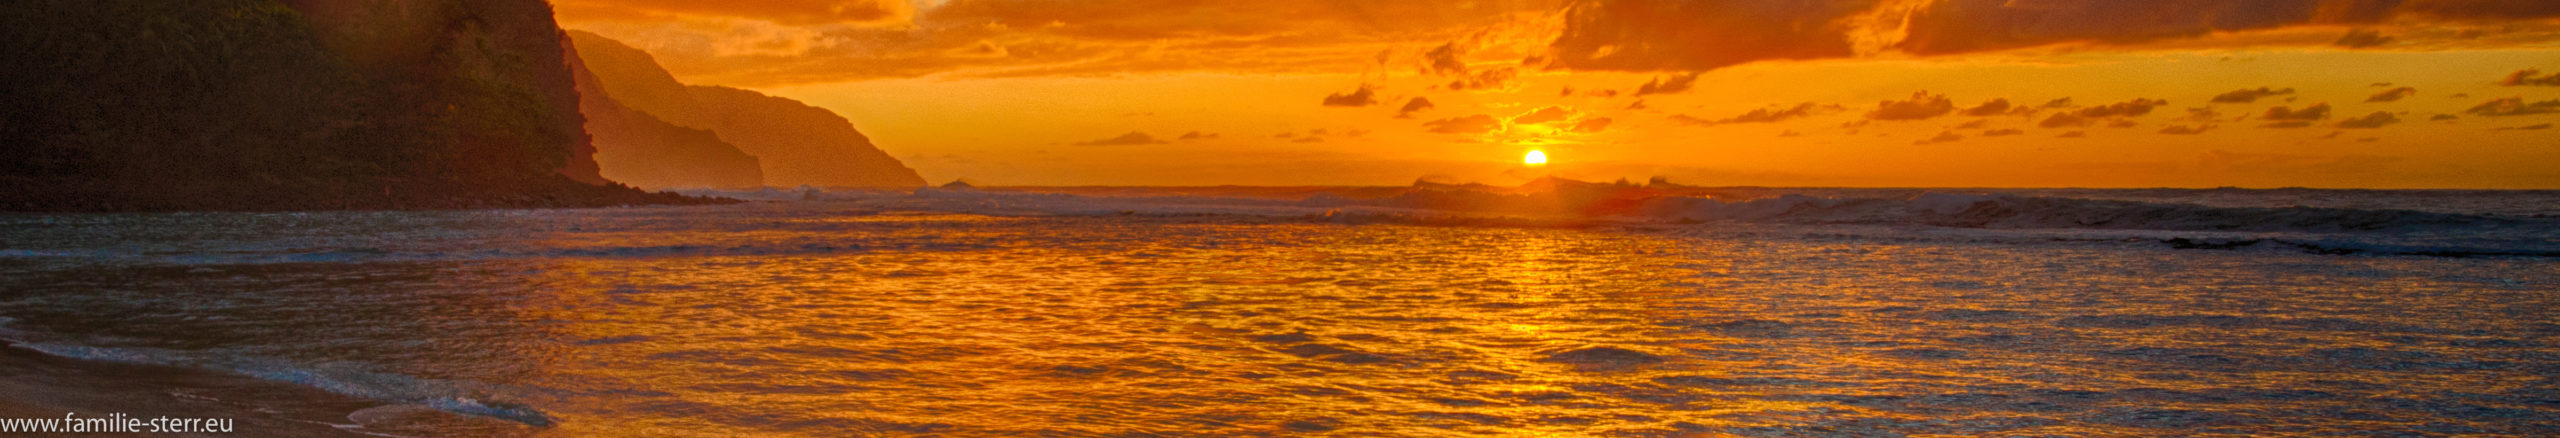 Sonnenuntergang Kauai